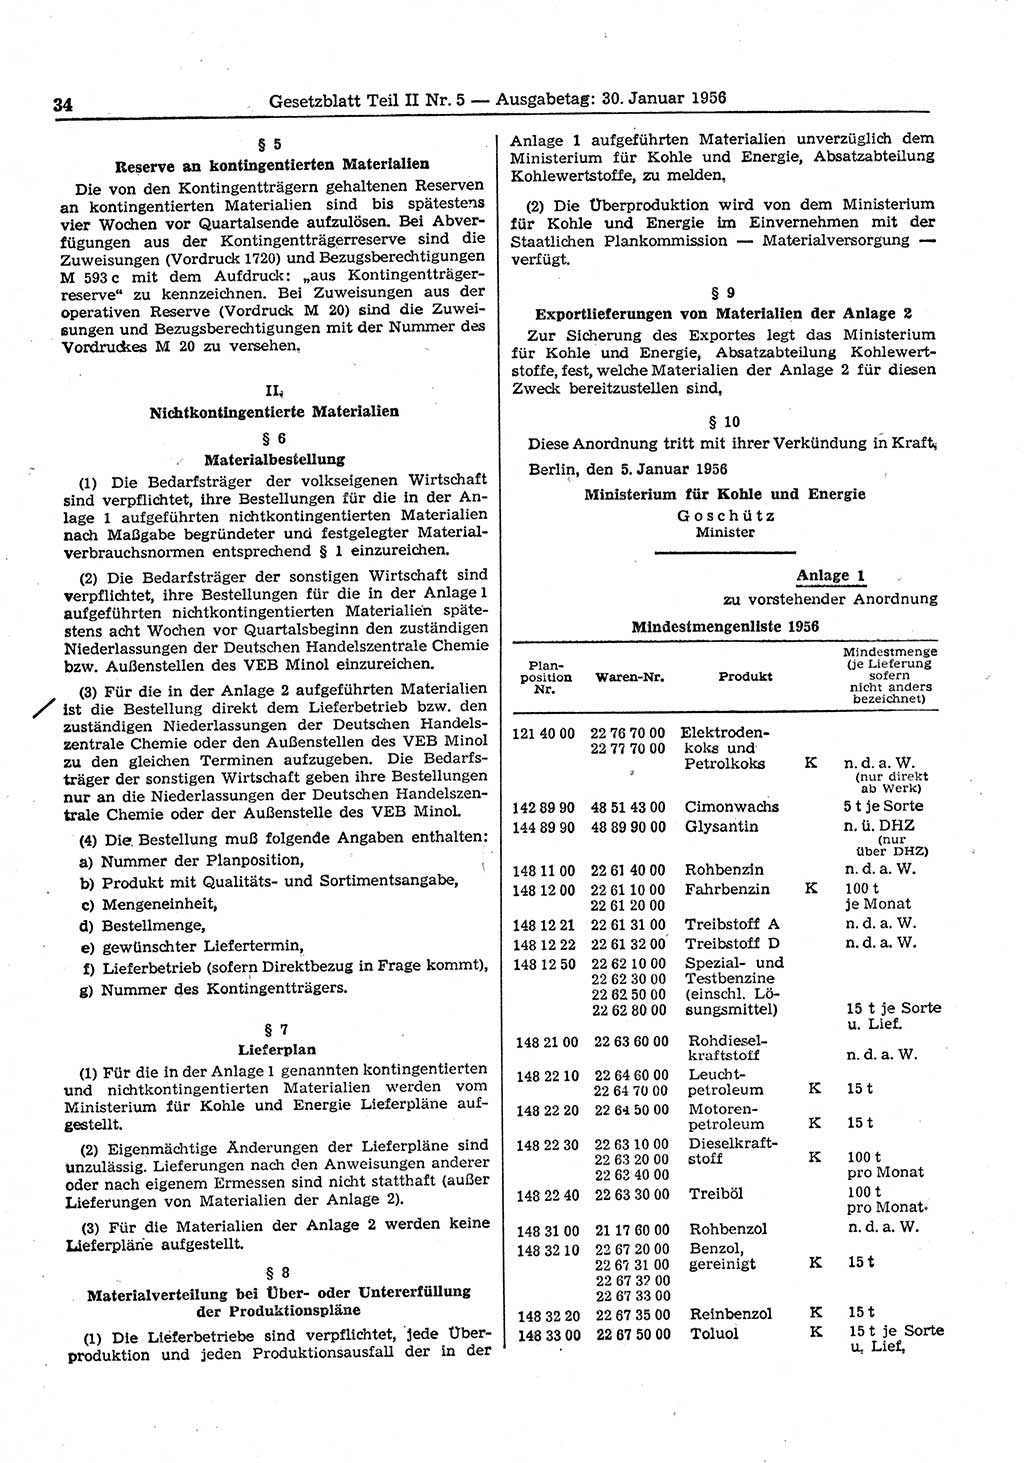 Gesetzblatt (GBl.) der Deutschen Demokratischen Republik (DDR) Teil ⅠⅠ 1956, Seite 34 (GBl. DDR ⅠⅠ 1956, S. 34)